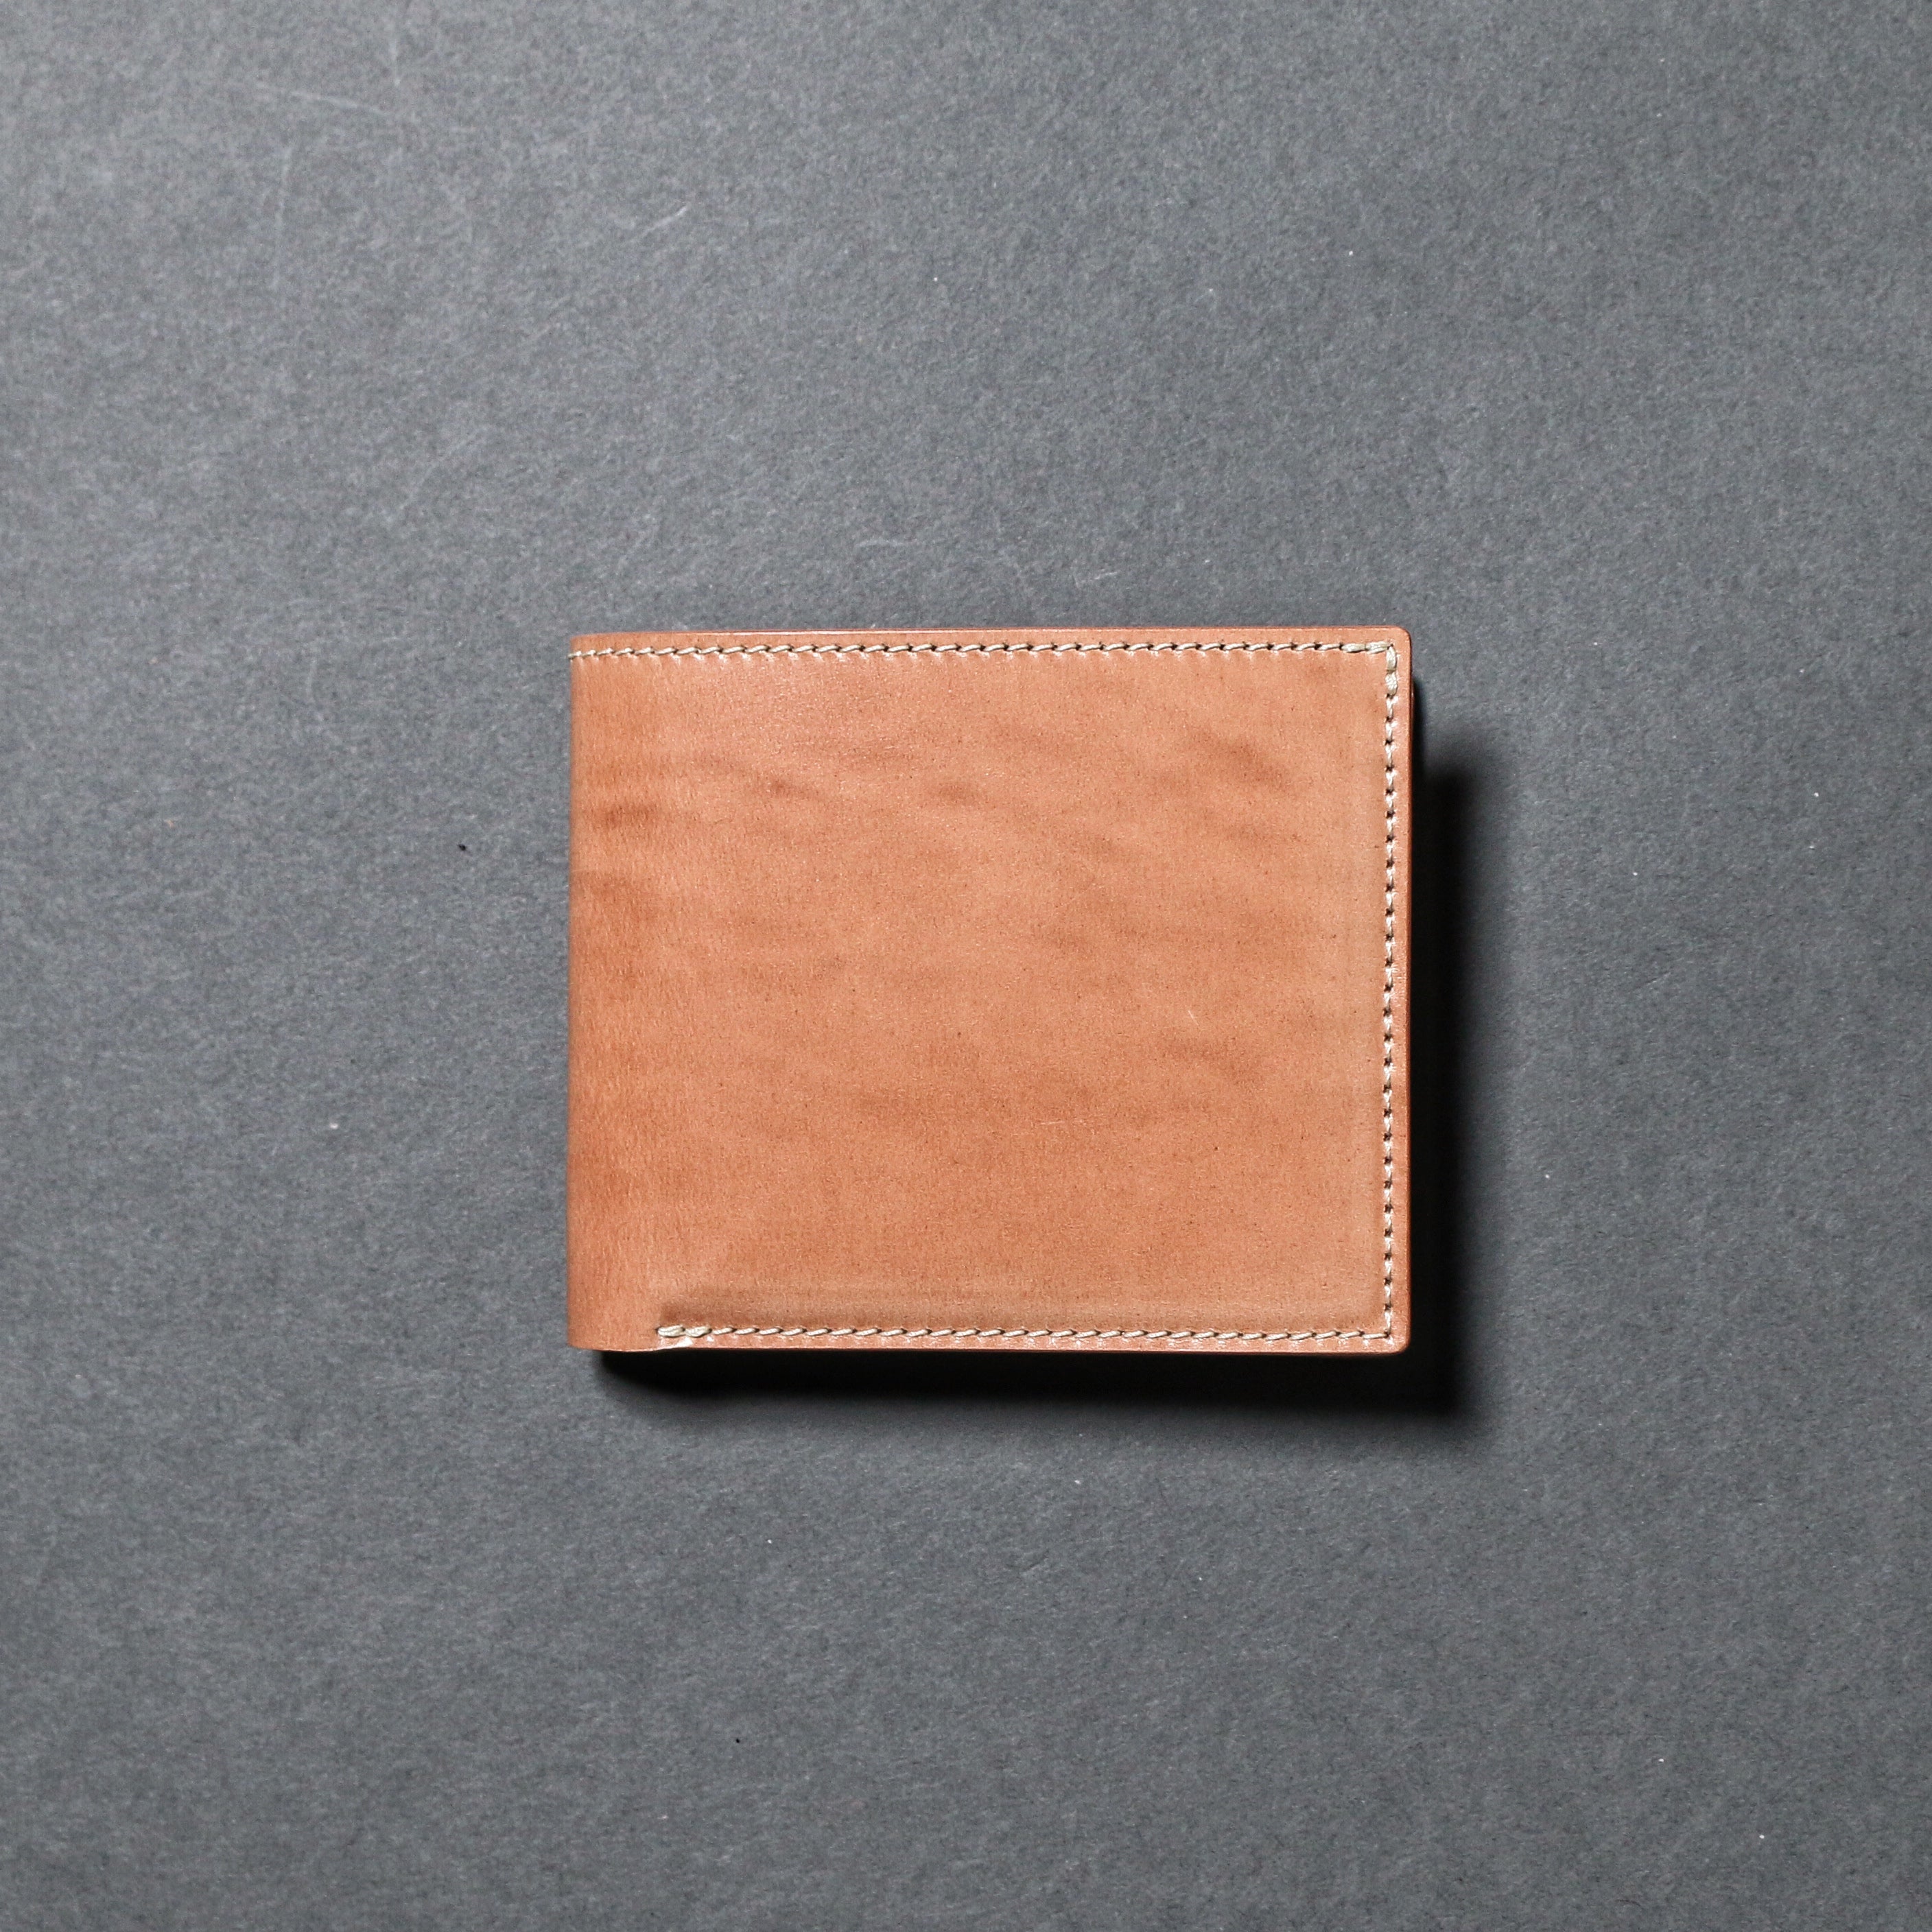 SL0194 cordovan  wallet